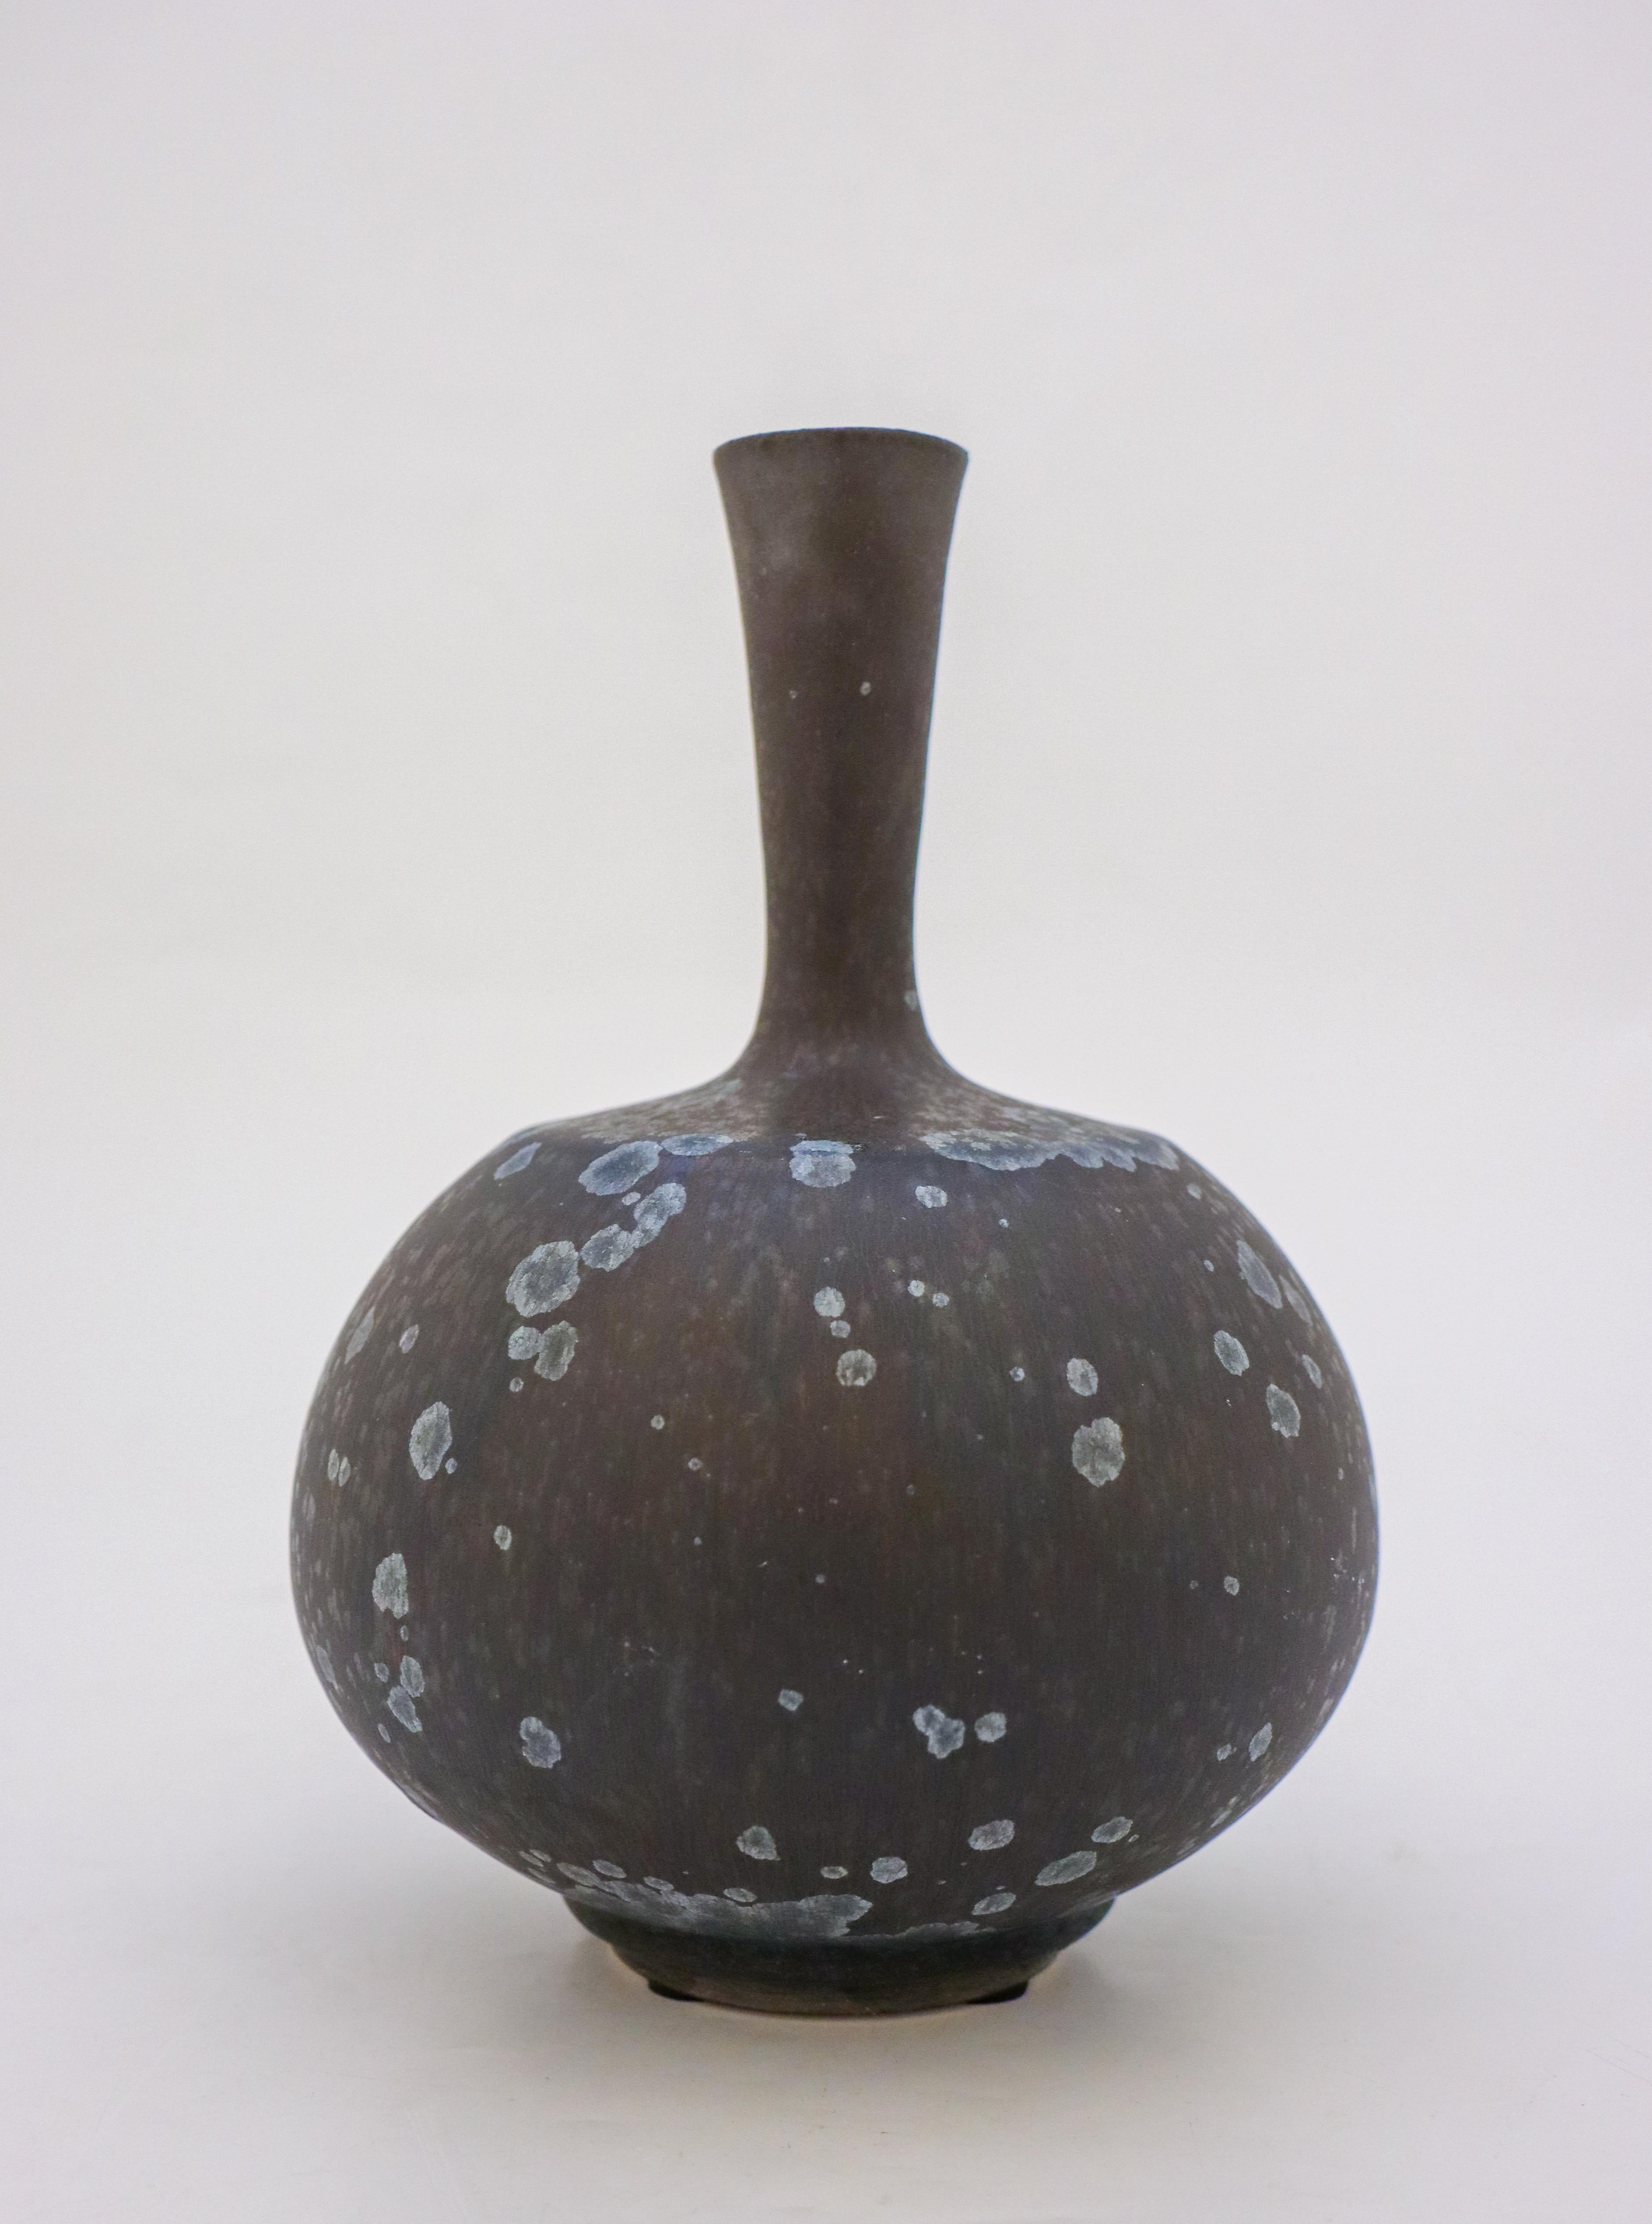 Vase Dark Blue Black Crystalline Glaze Isak Isaksson Contemporary Sweden Ceramic 2